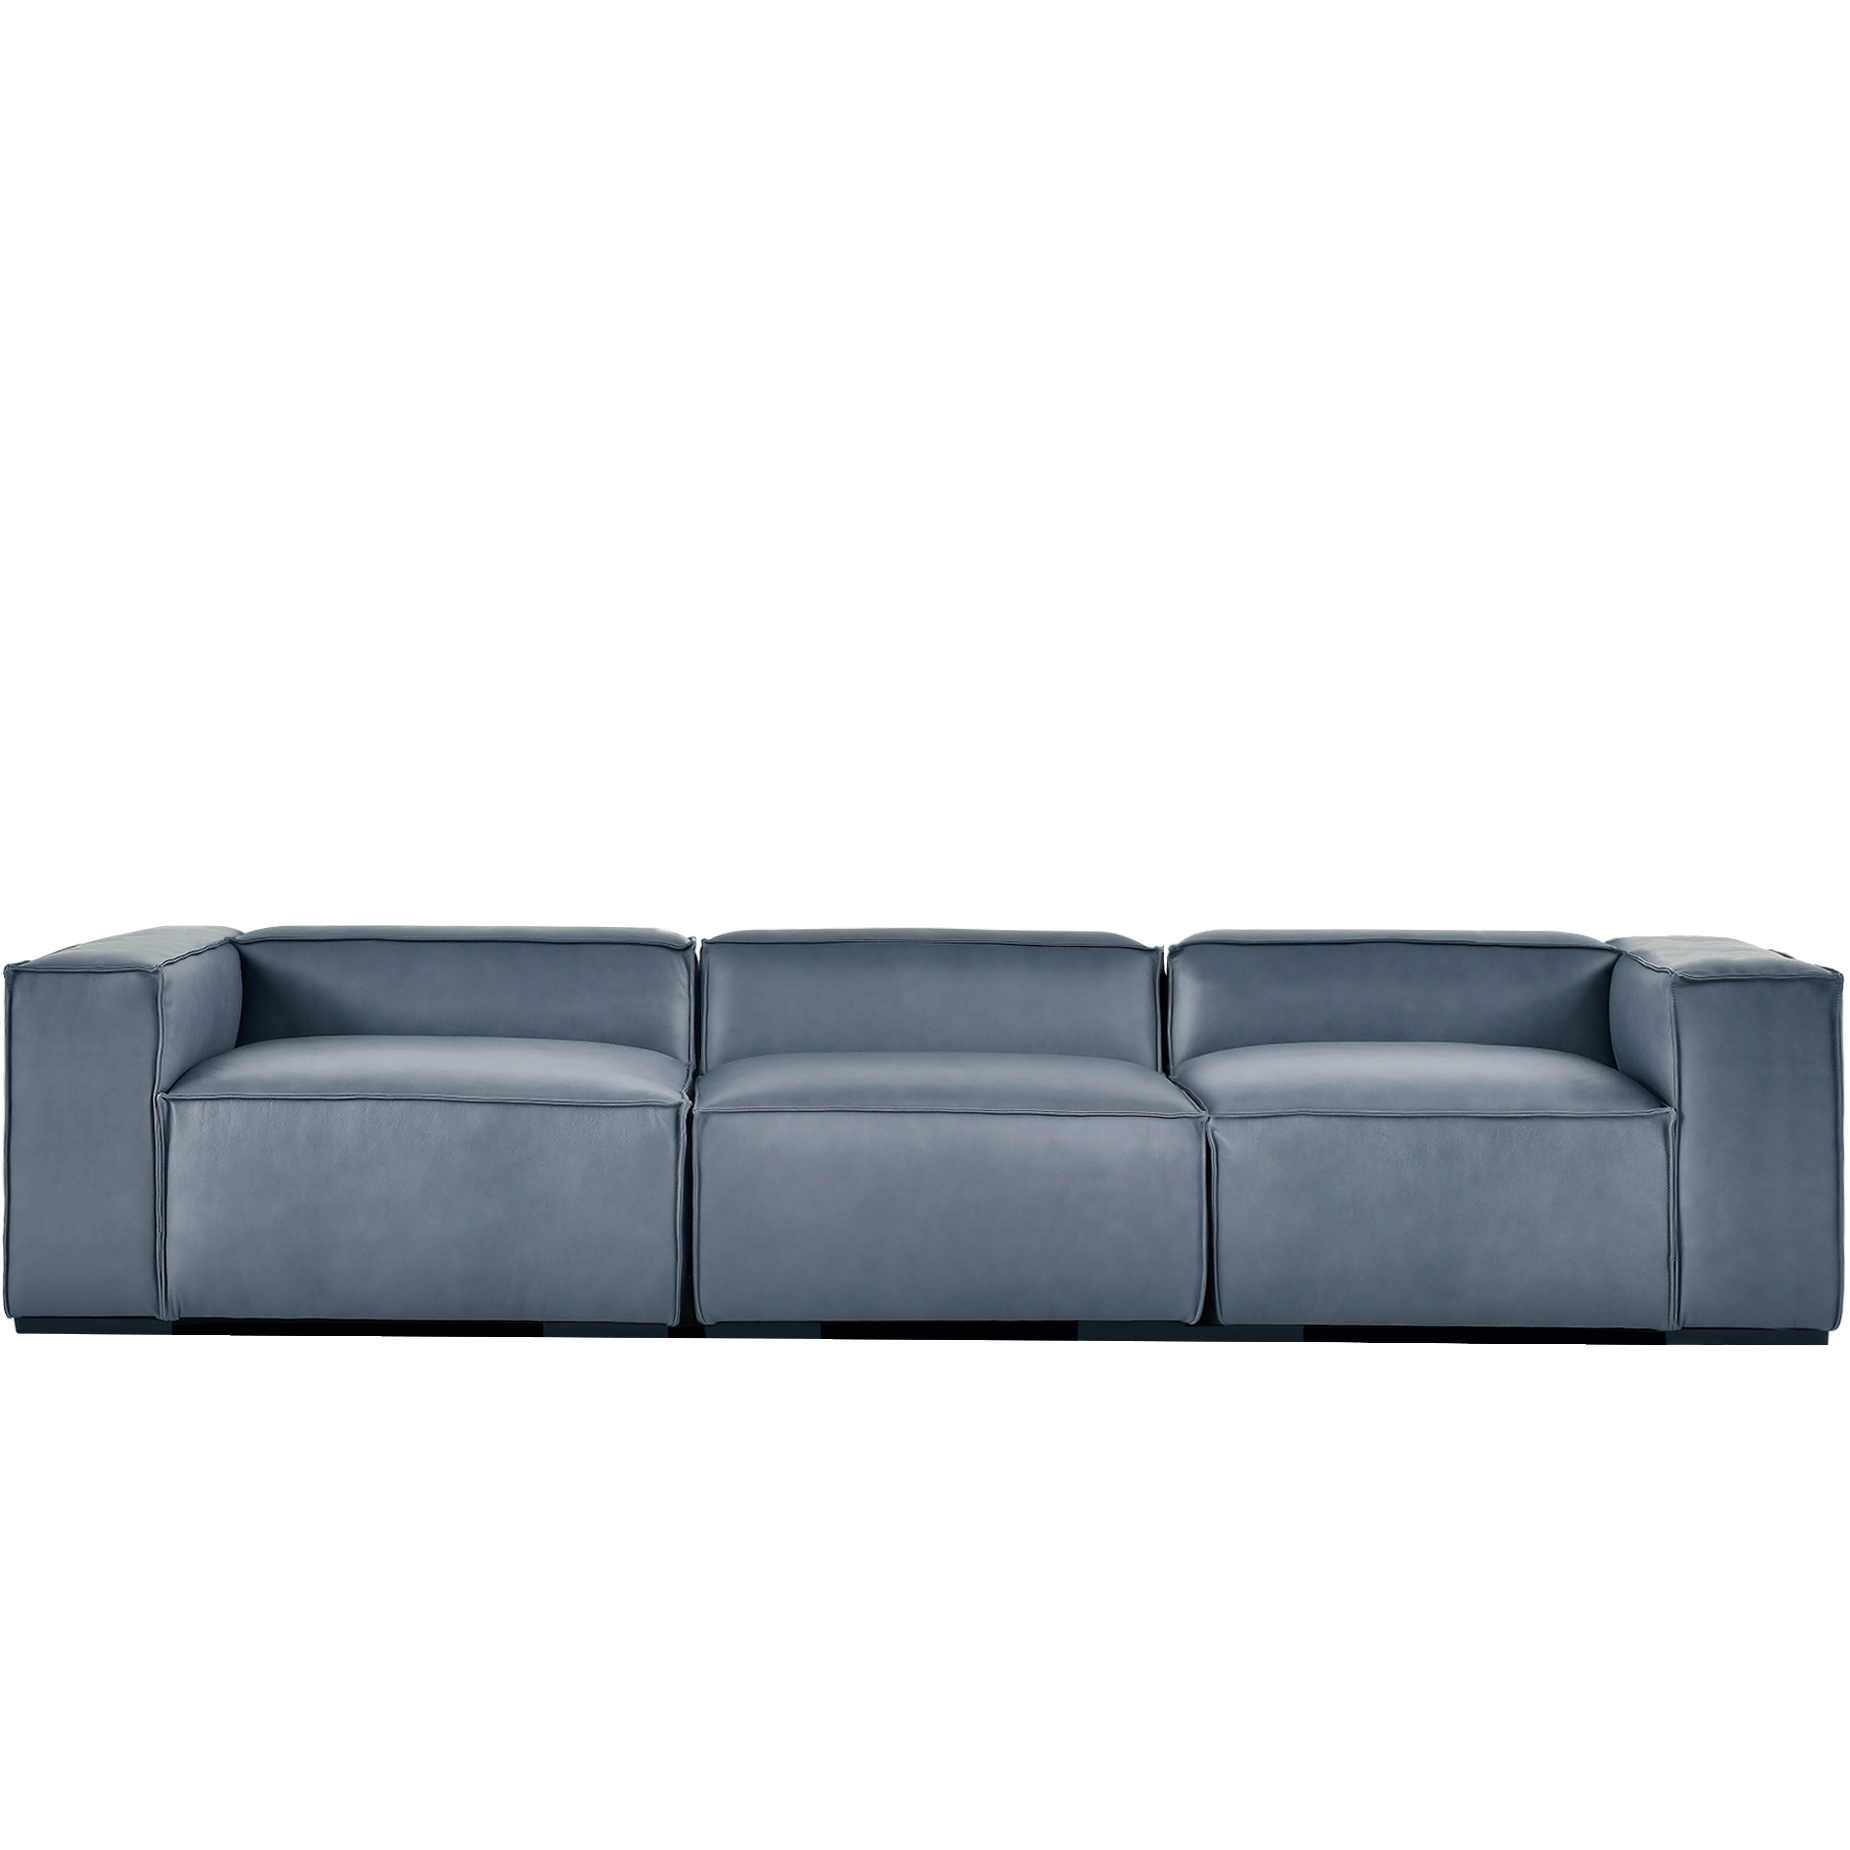 (주)도이치 DOICH ®    PEN16 modular sofa 도이치 펜16 4인 모듈소파  [4주 주문제작]